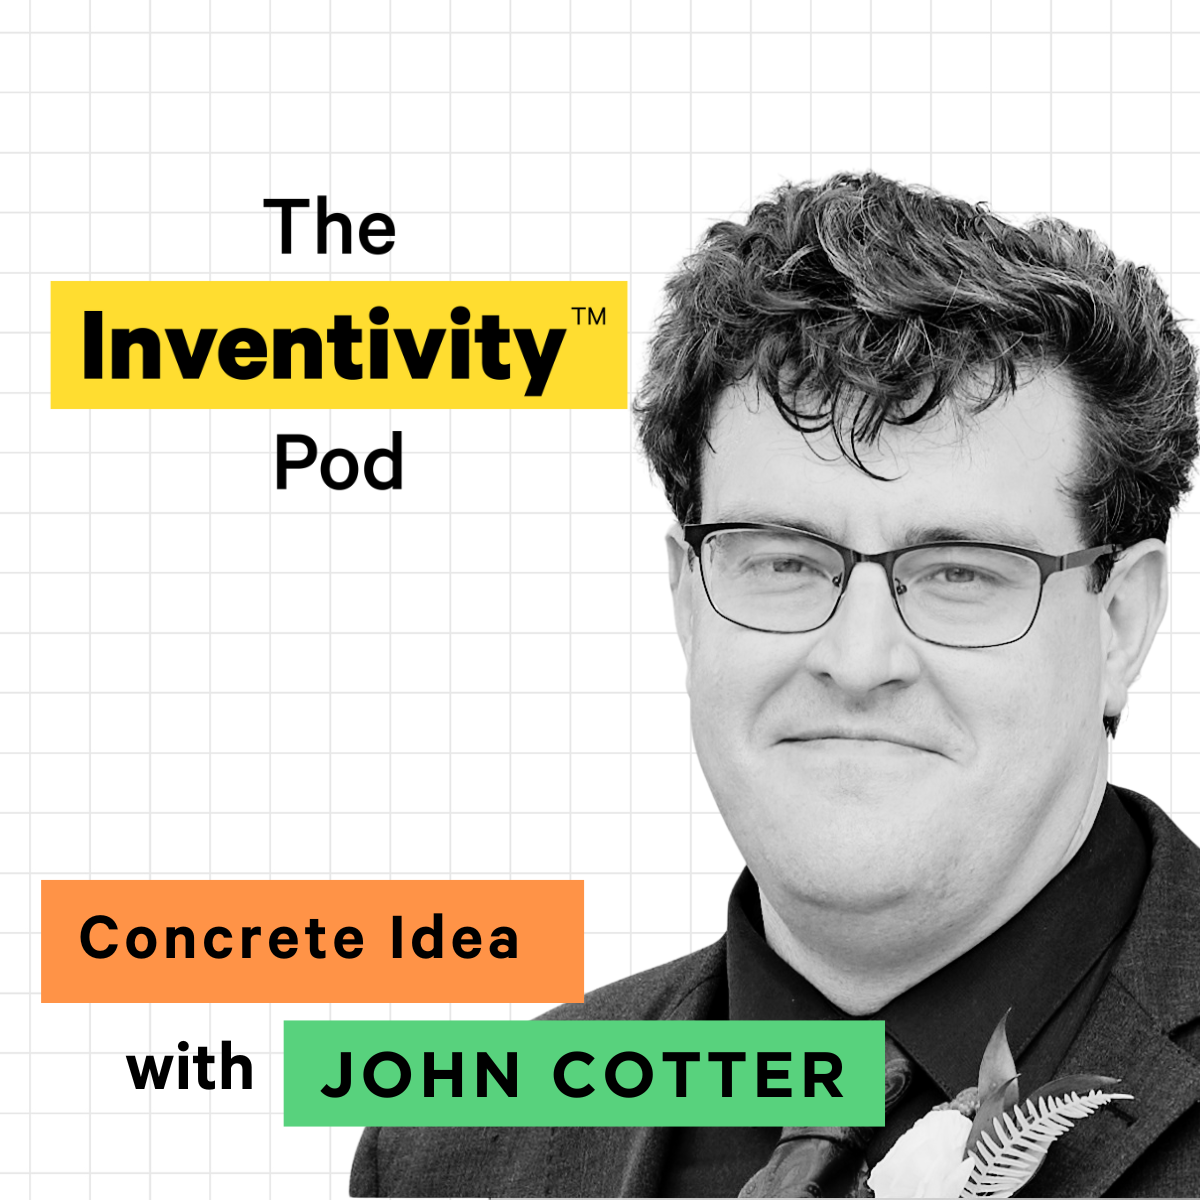 Dr. John Cotter's Concrete Idea